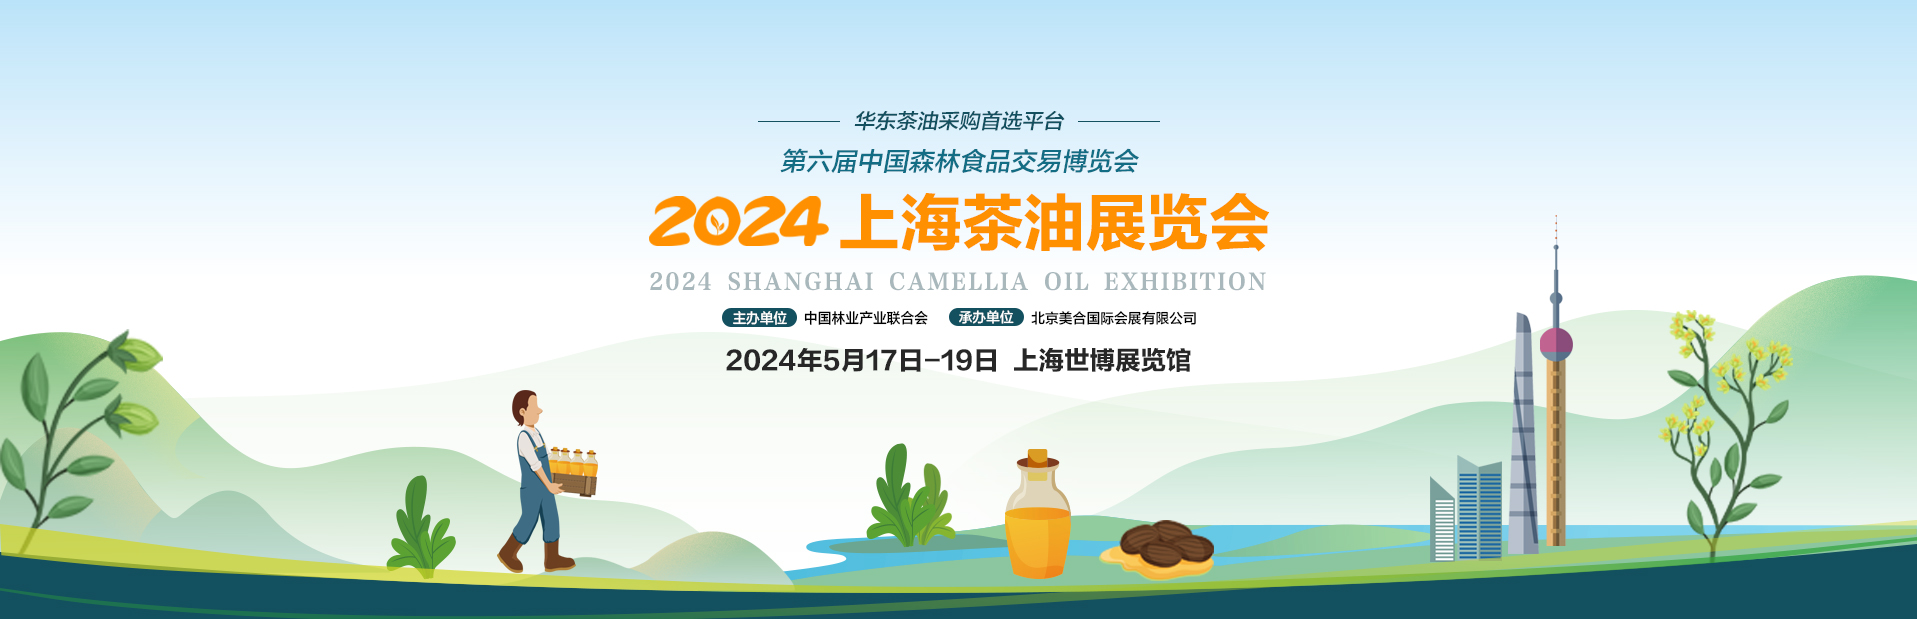 2024上海茶油展覽會_美合上海茶油展